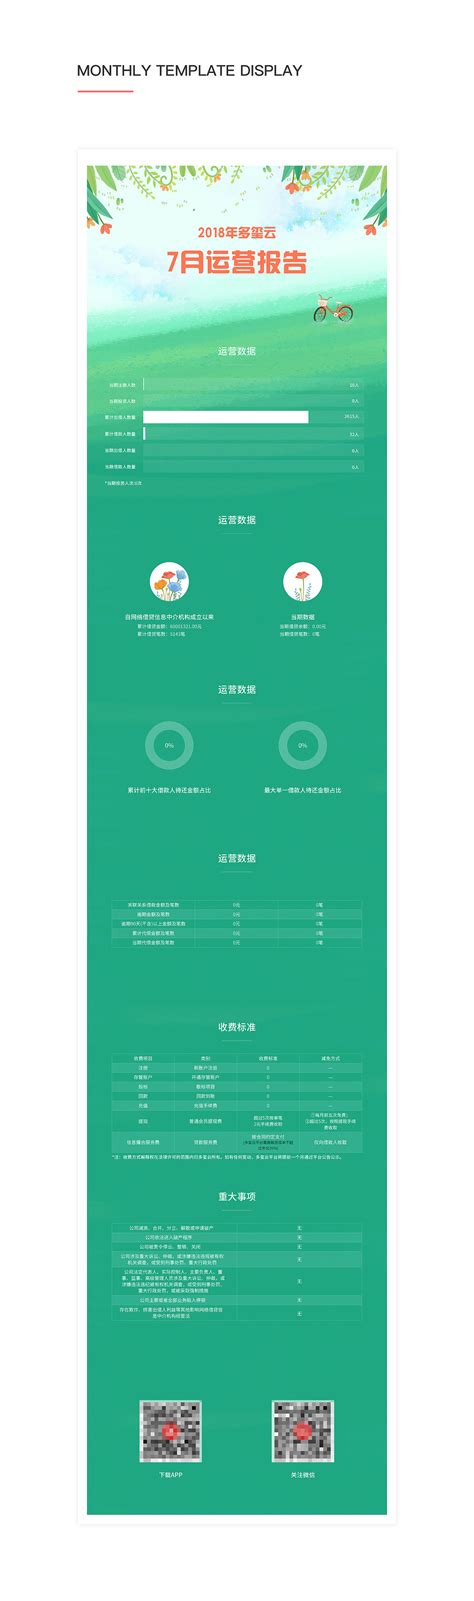 2012年9月中国电信运营商应用商店月报 - 易观